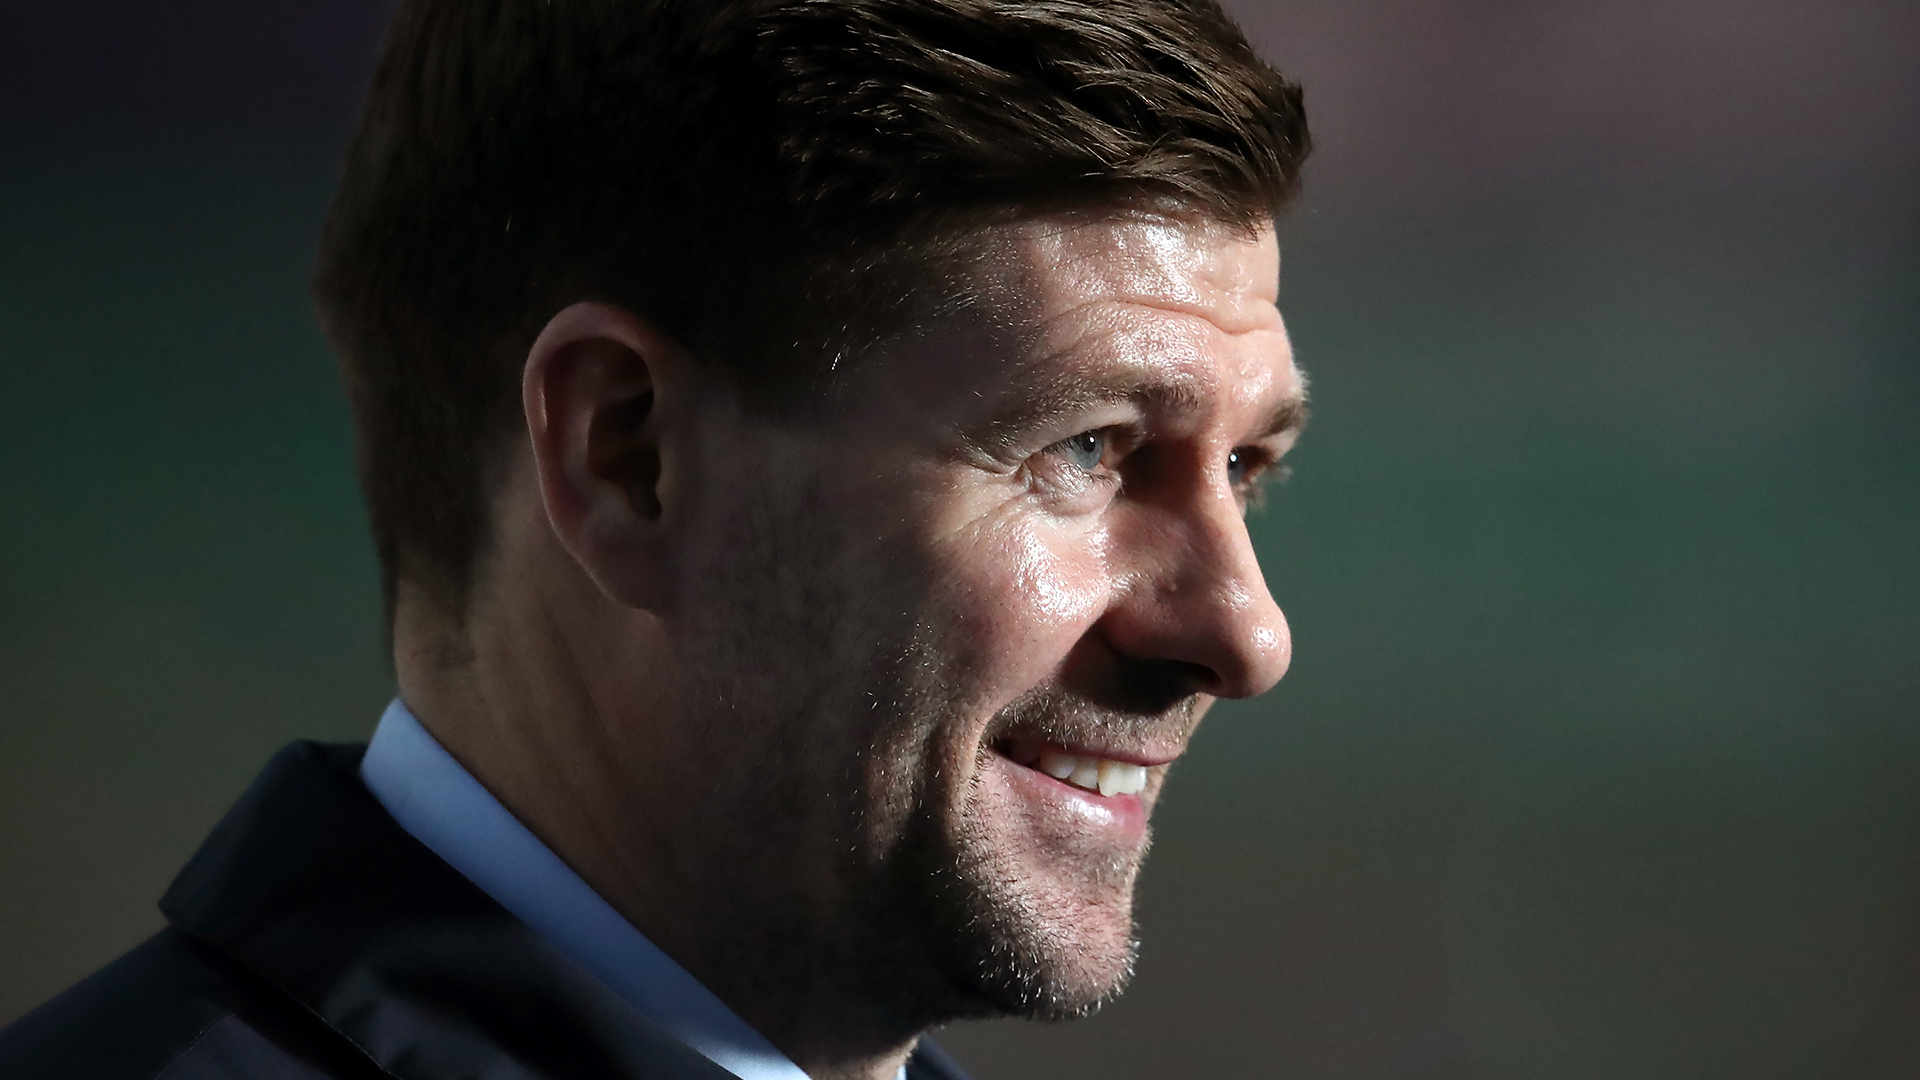 Next Aston Villa manager: Steven Gerrard replaces Dean Smith